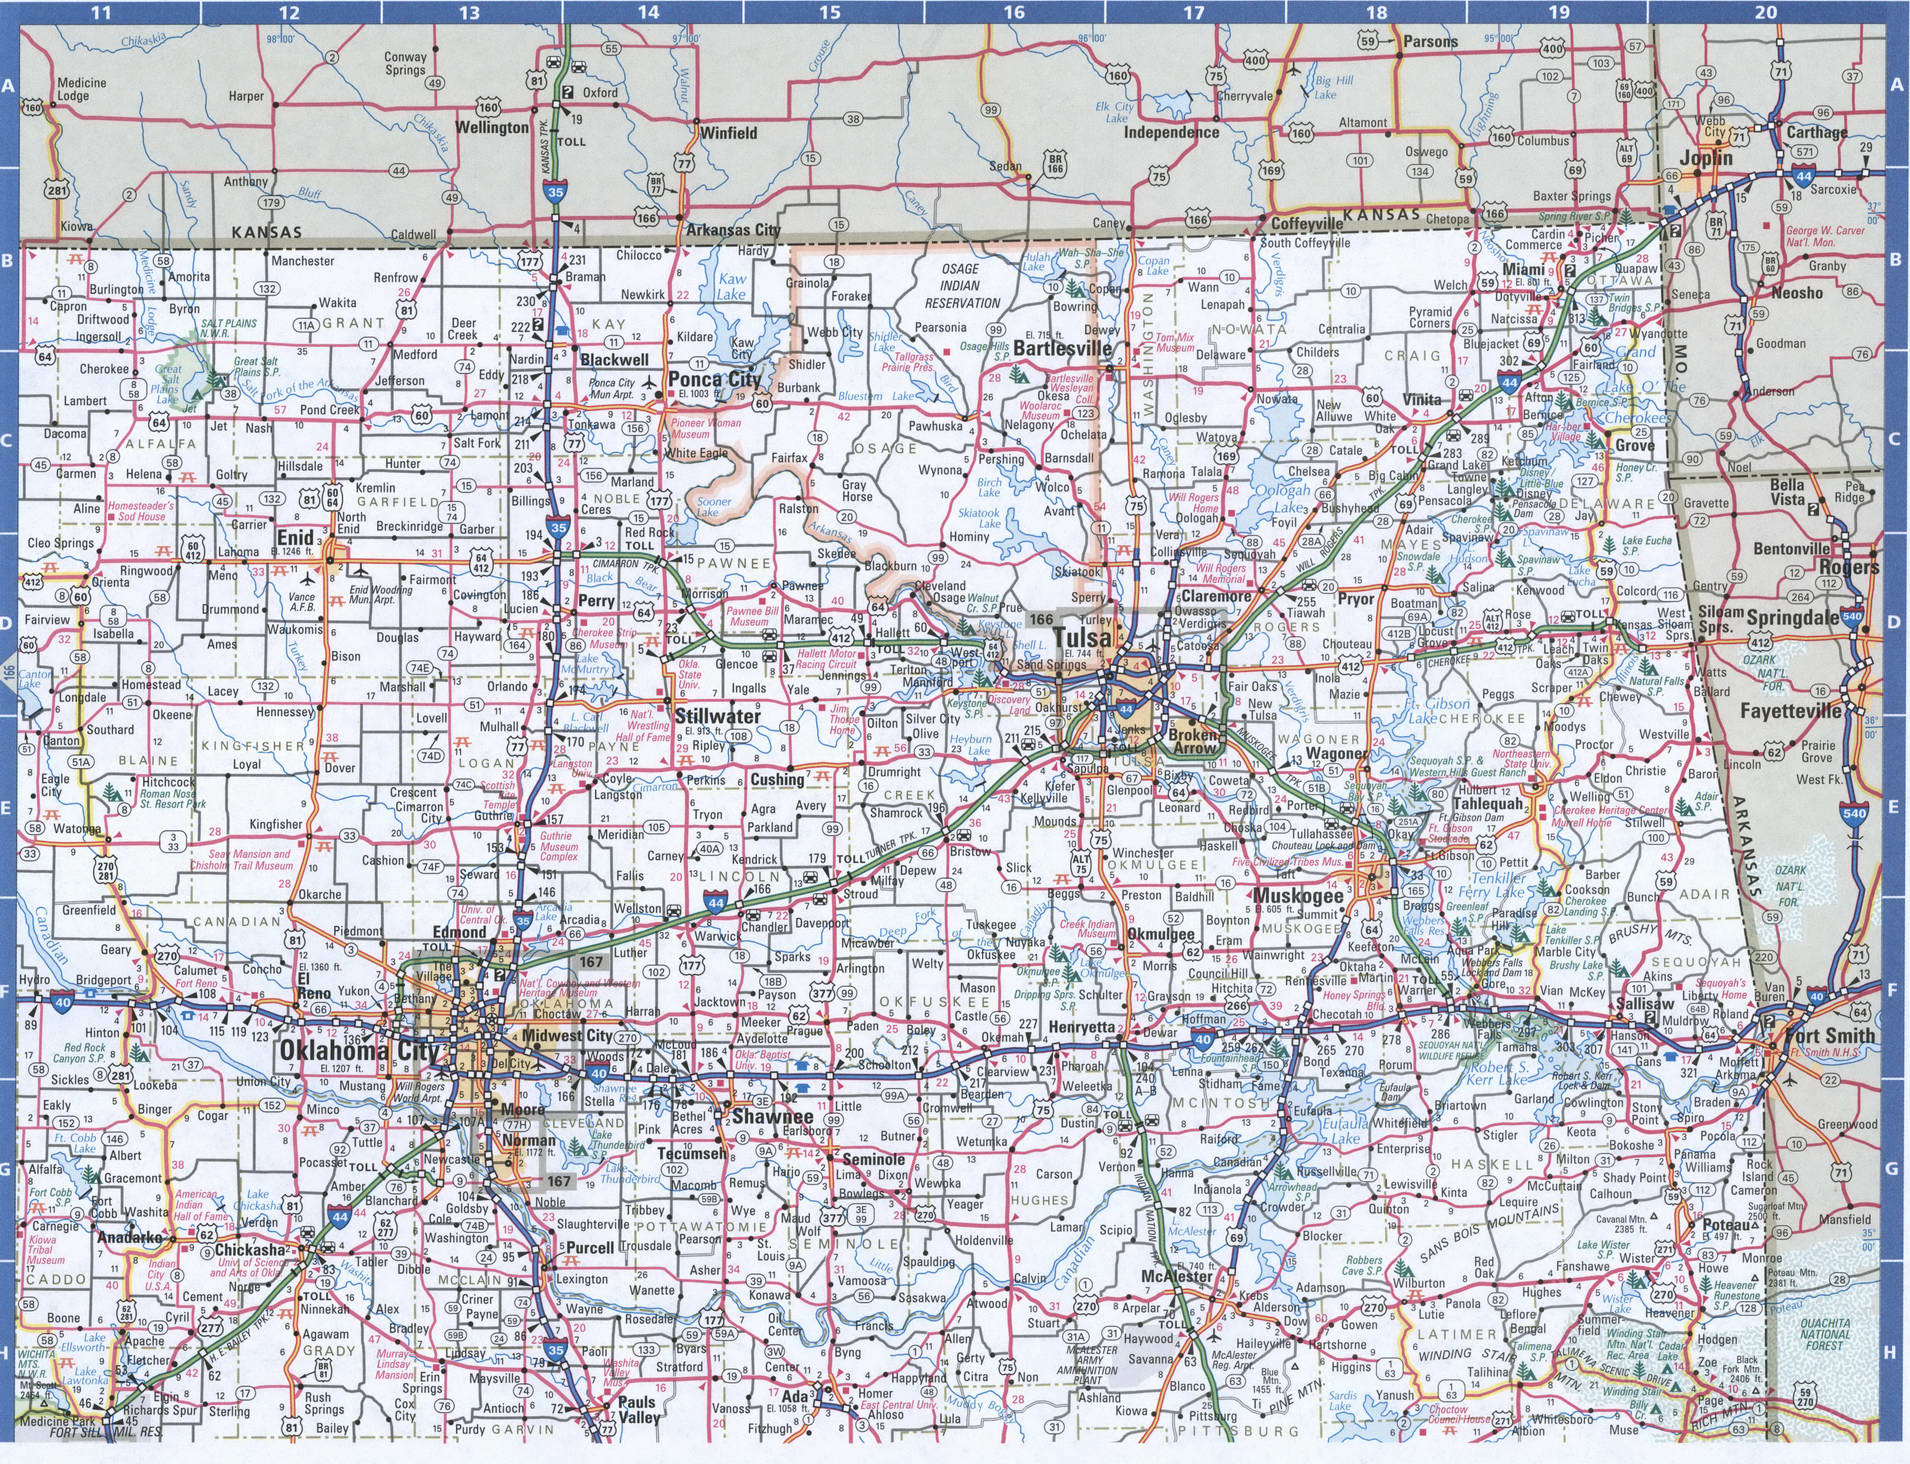 Оклахома-таун не указан в дорожном атласе